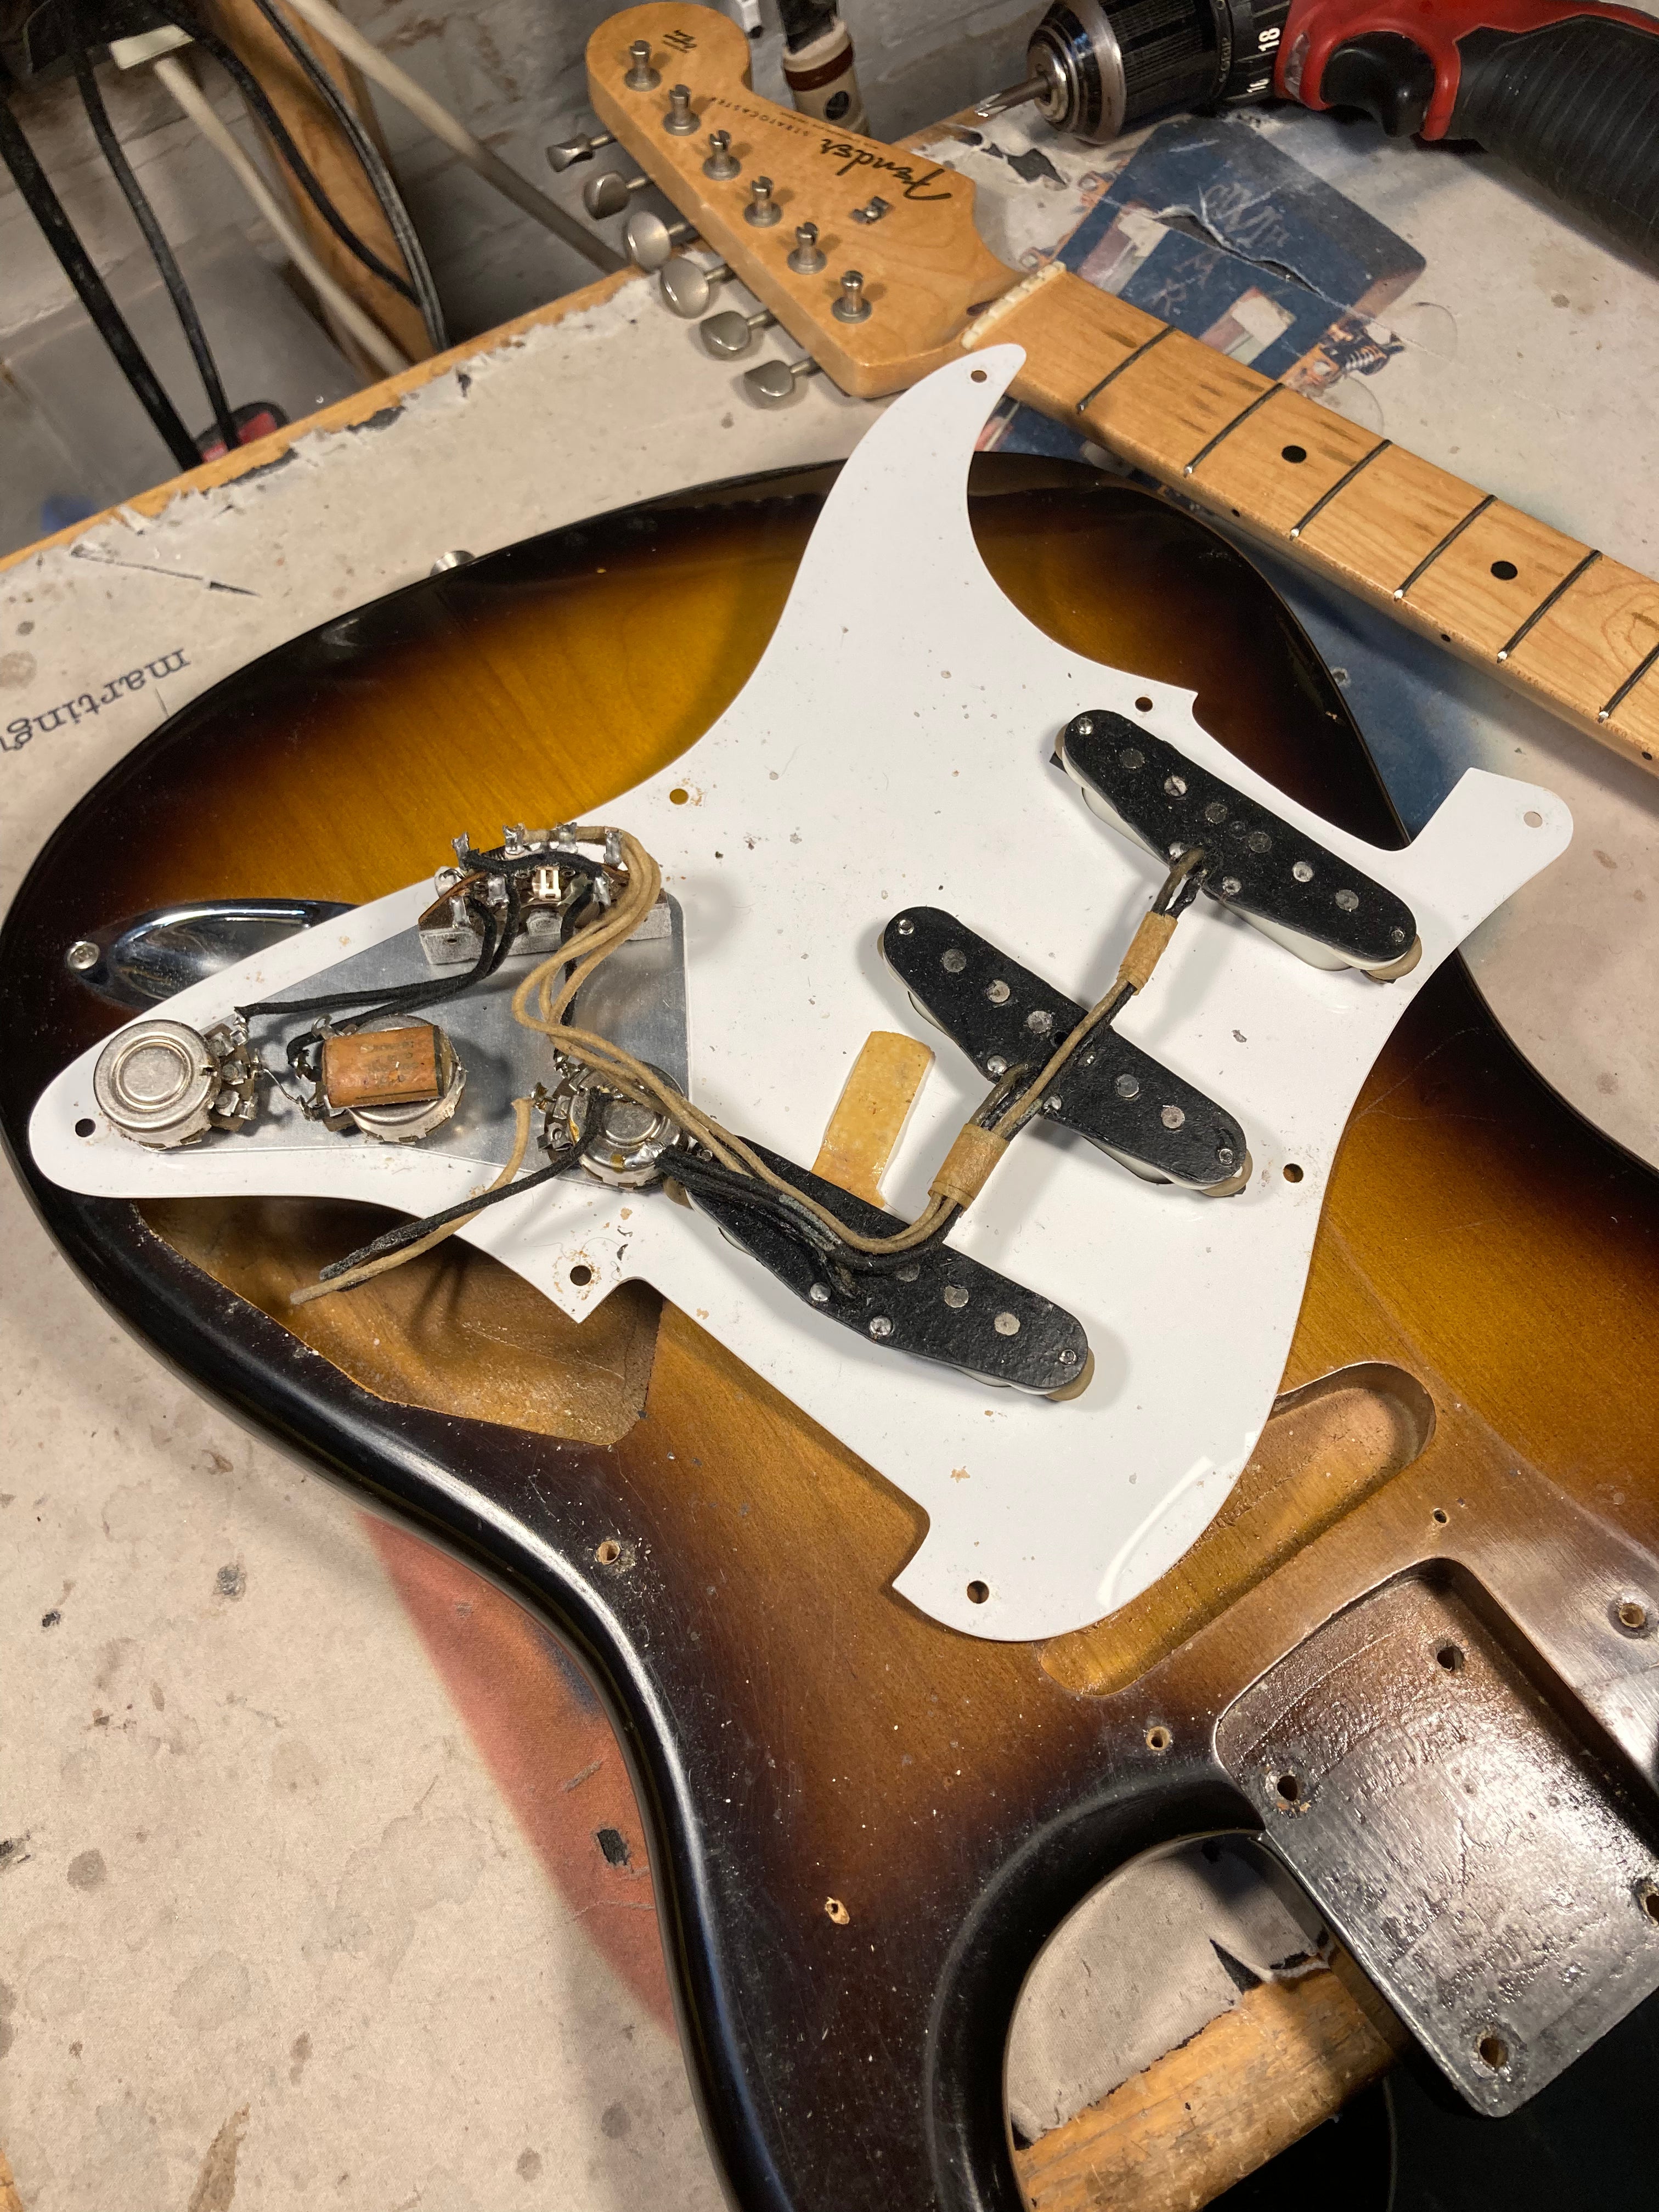 Fender 1957 Stratocaster